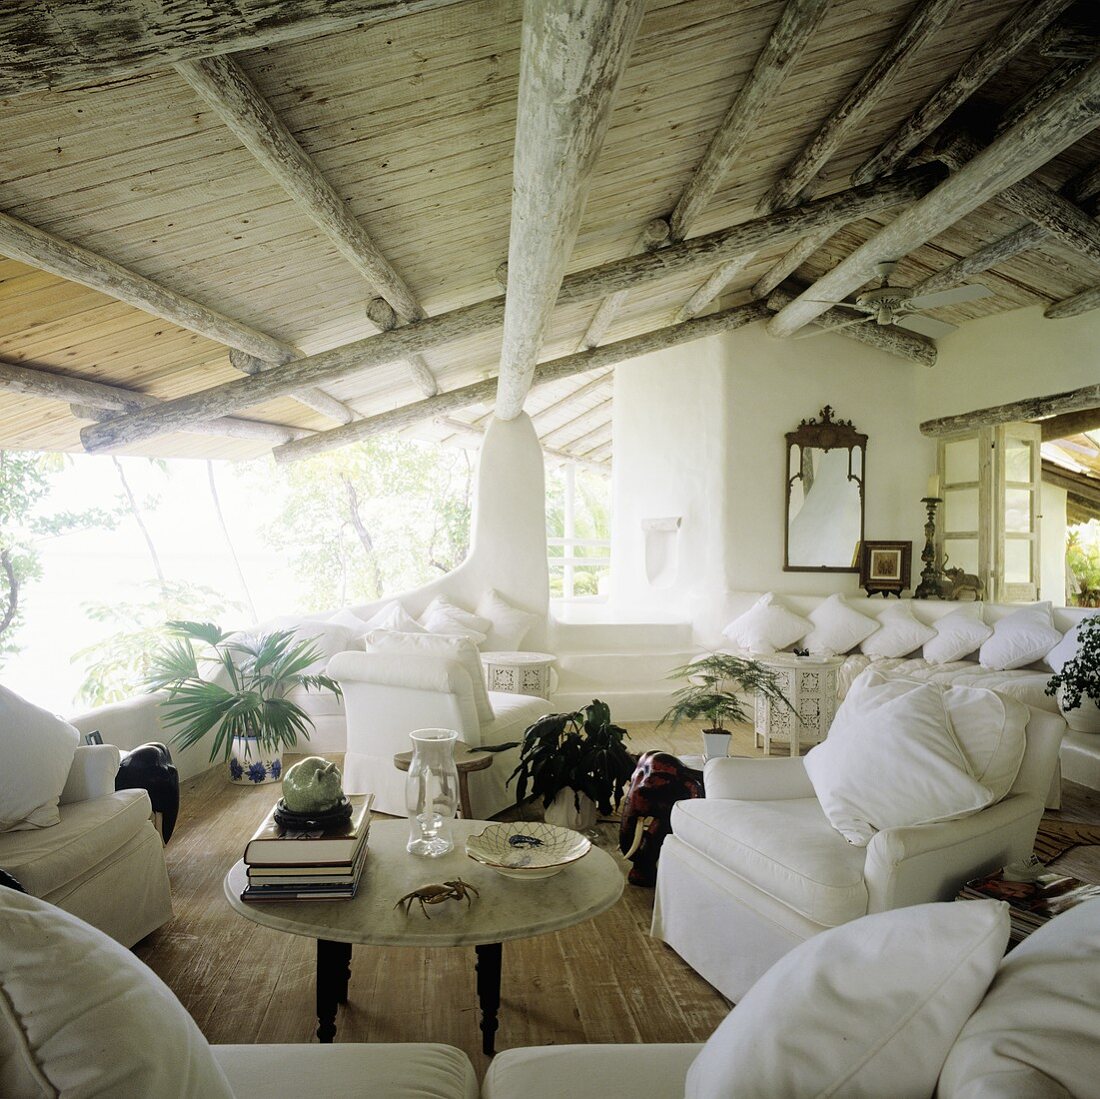 Ferienhaus in den Tropen mit rustikaler Holzdecke und offenen Ausblicken mit weisser Sofagarnitur